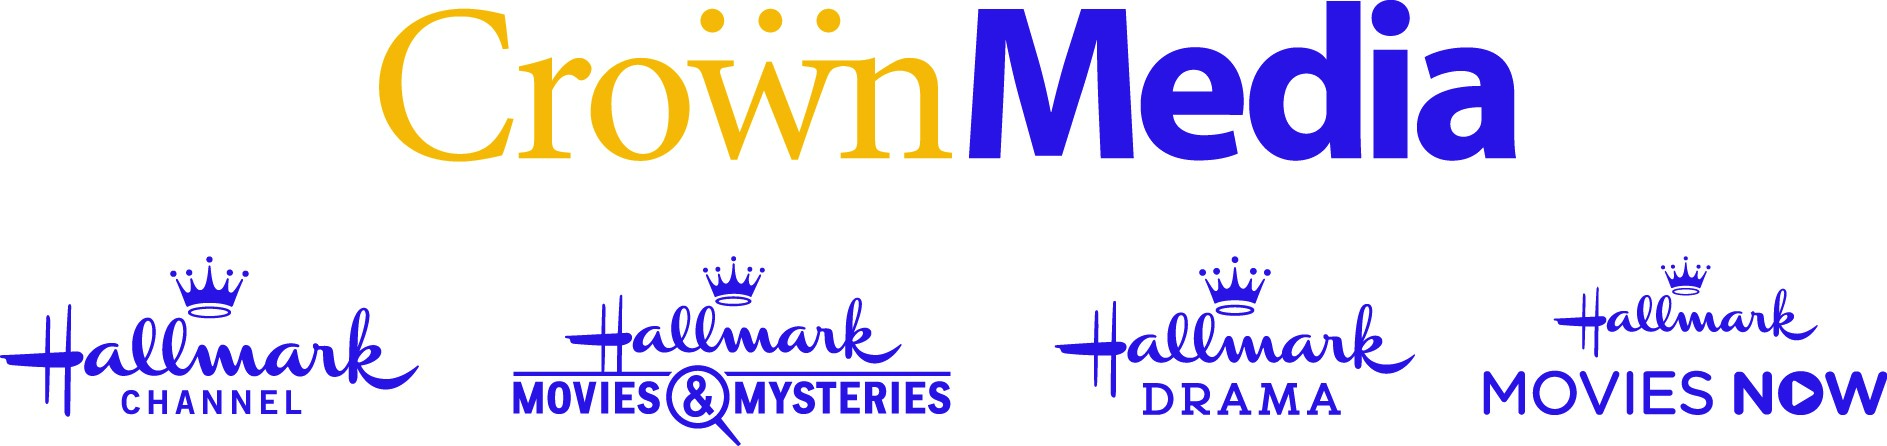 Hallmark Channel Logo - Crown Media - Hallmark Channel | MediaVillage